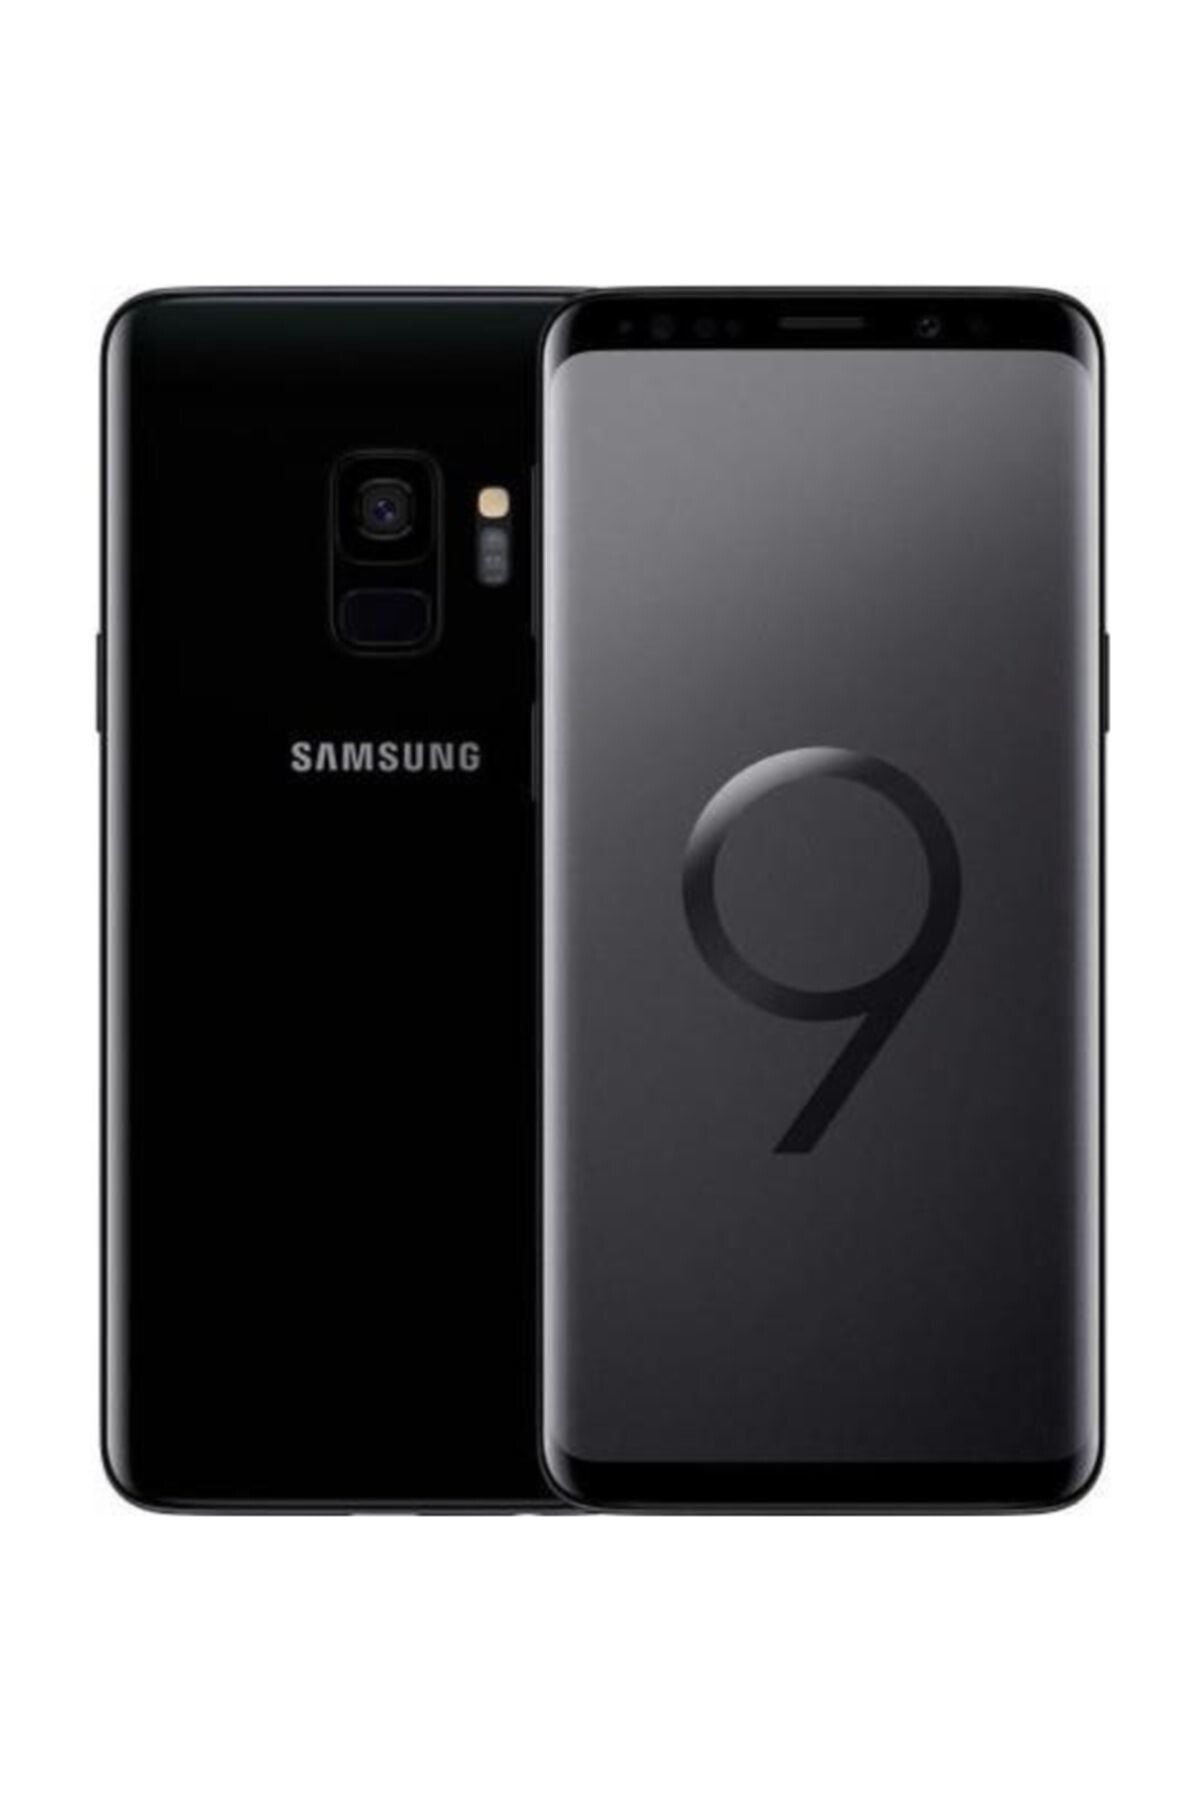 Samsung Yenilenmiş Galaxy S9 Black 64 GB B Kalite (12 Ay Garantili)